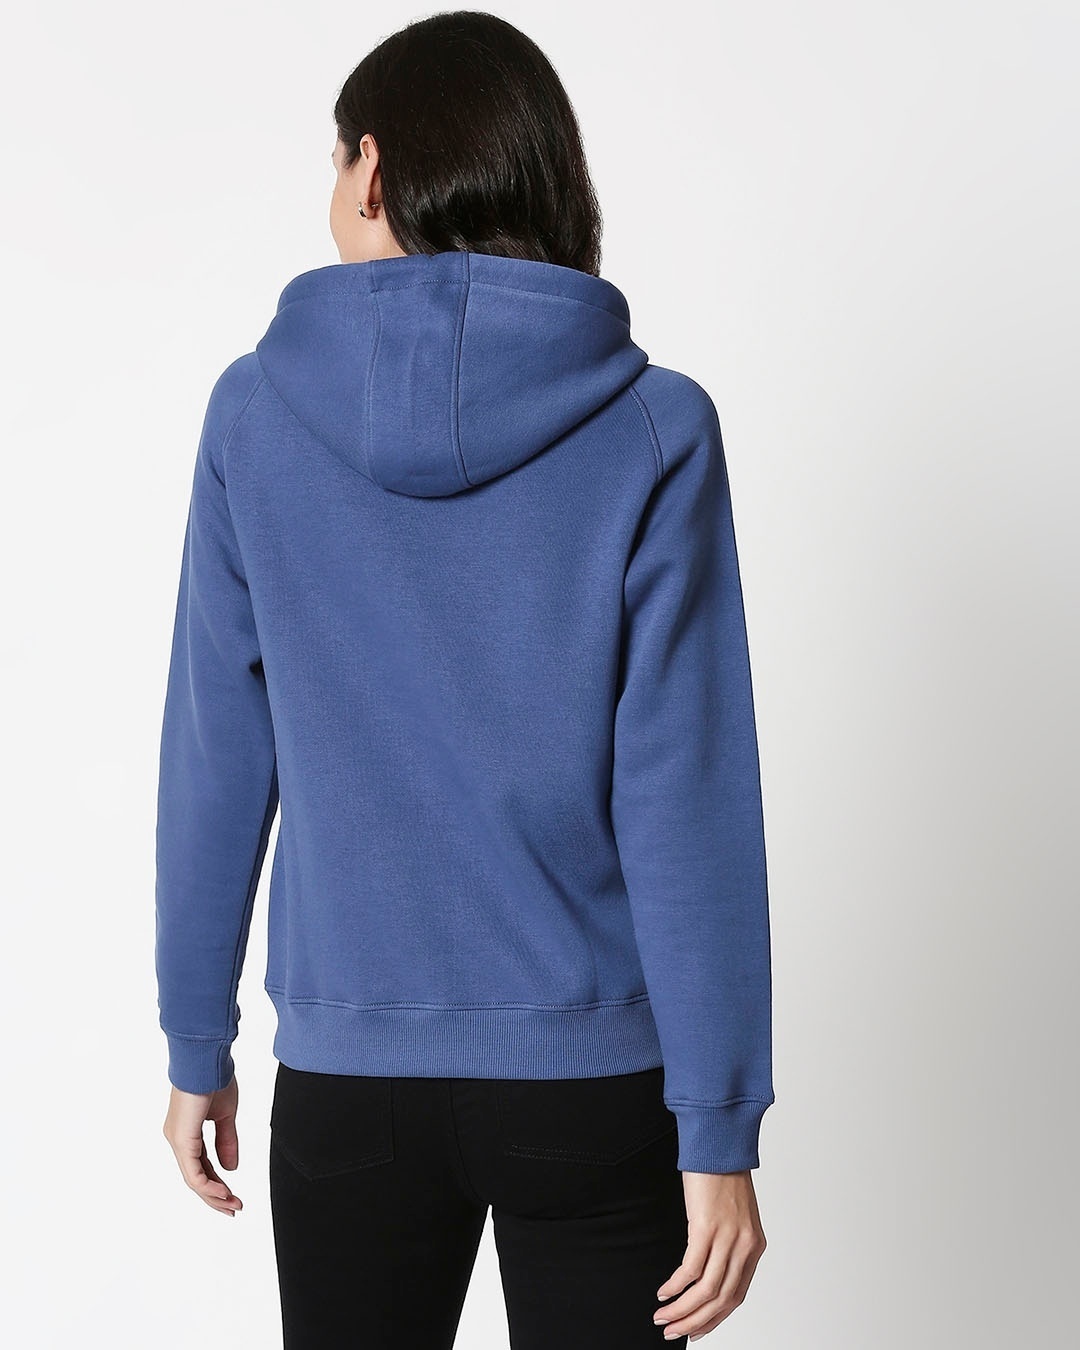 Buy Ensign Blue Basic Hoodie Sweatshirt for Women blue Online at Bewakoof